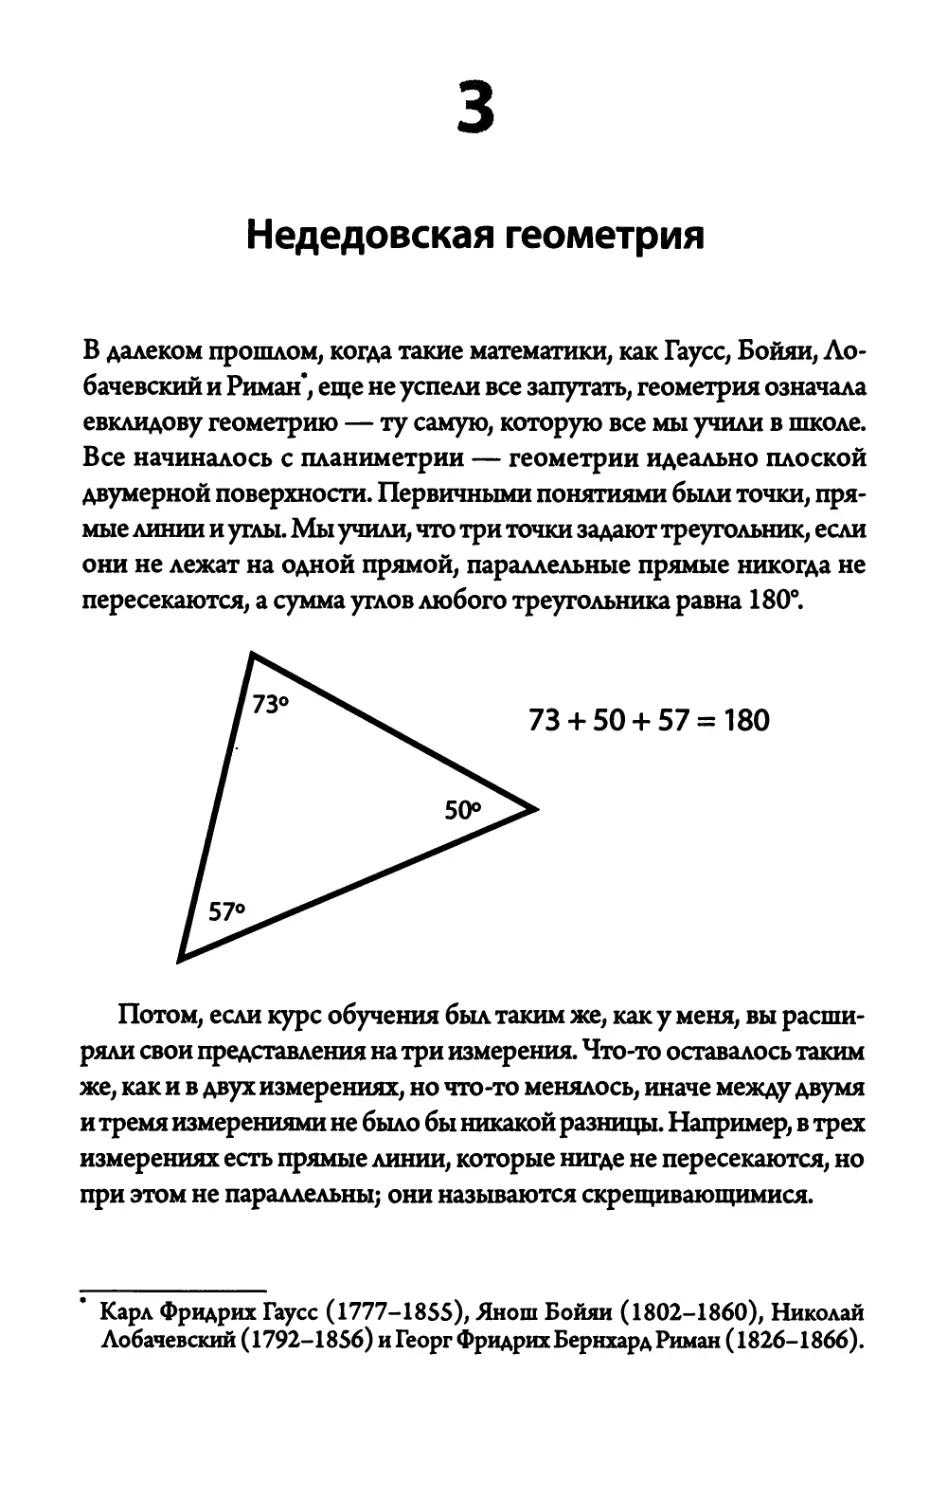 3. Недедовская геометрия